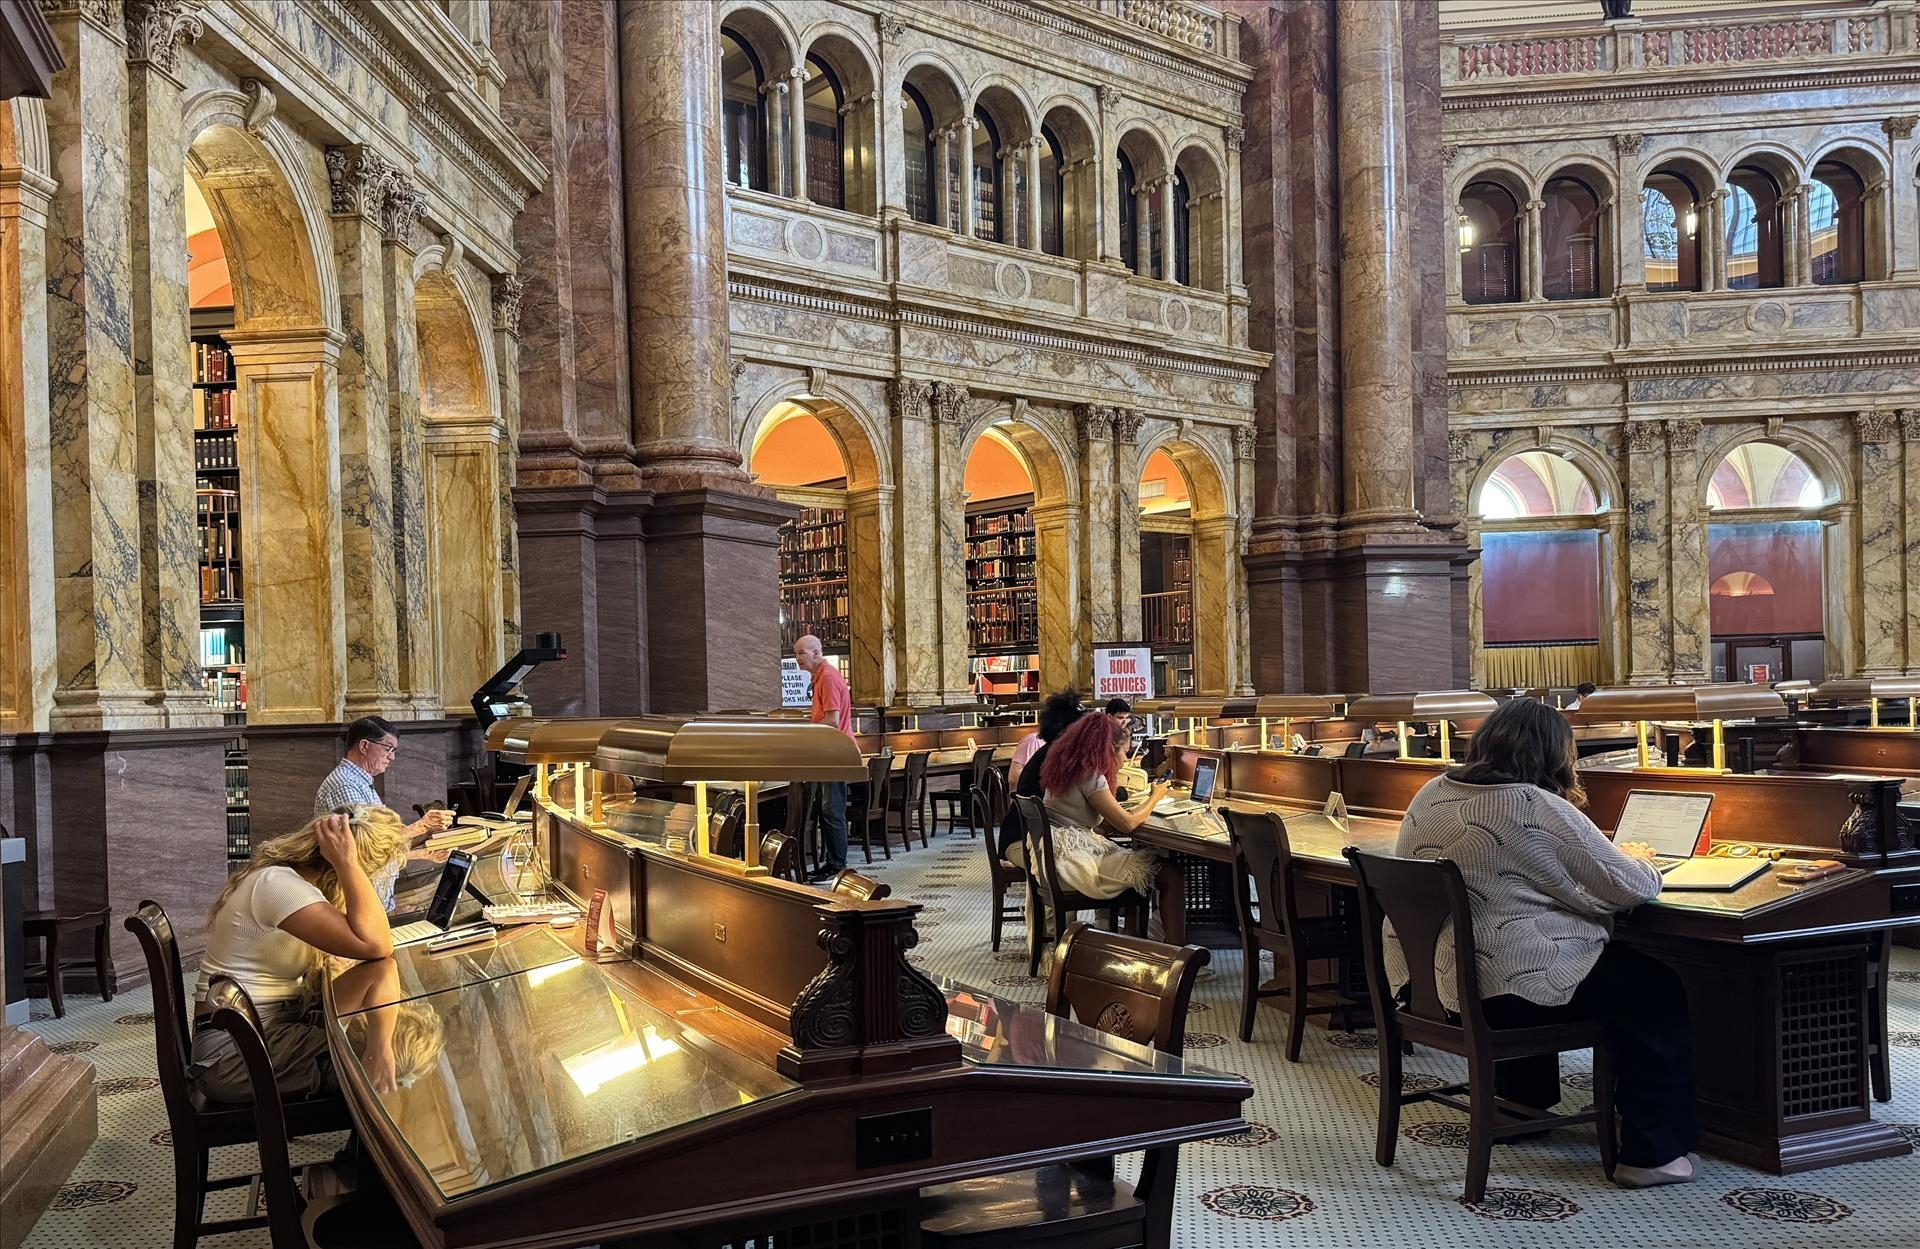 在全球最大图书馆——美国国会图书馆探索越南历史文献